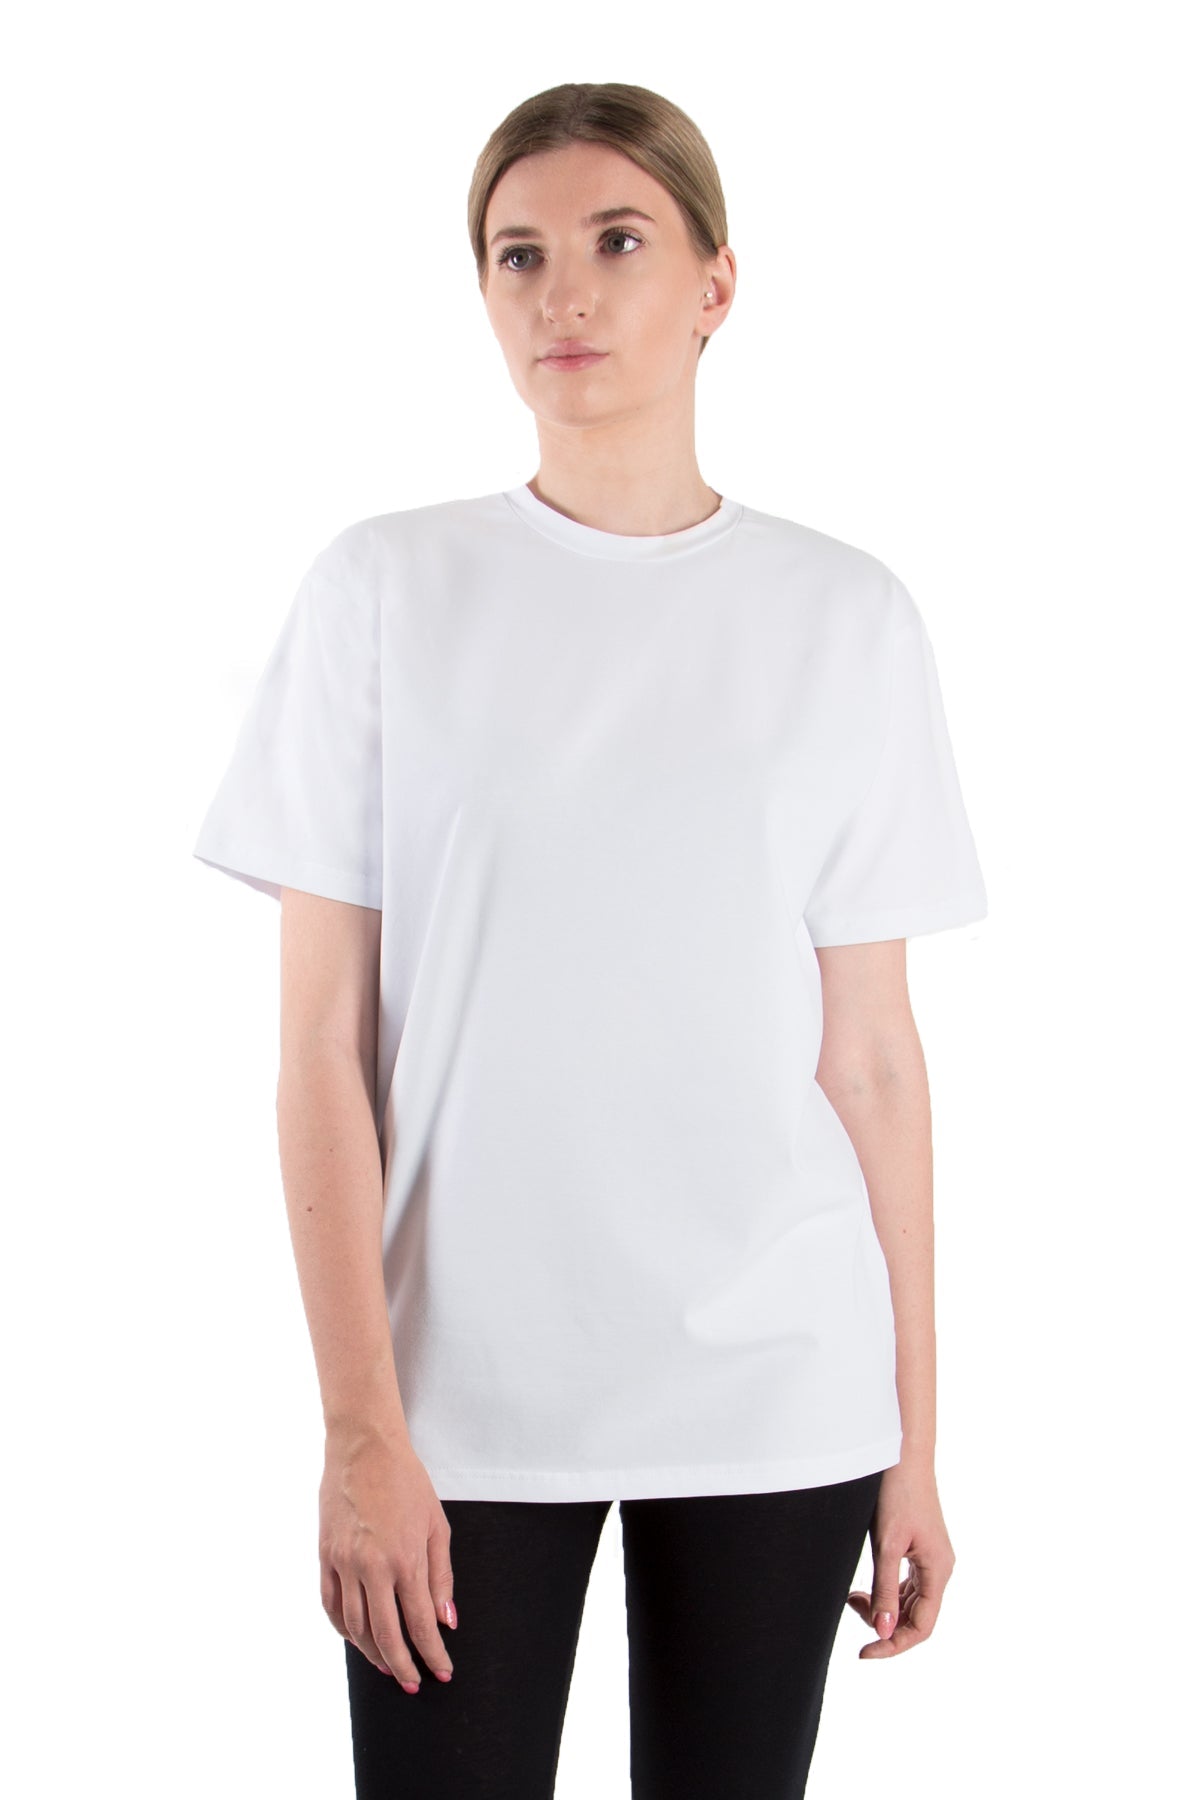 T-Shirt Rundhals (10er-Pack) - greymelange